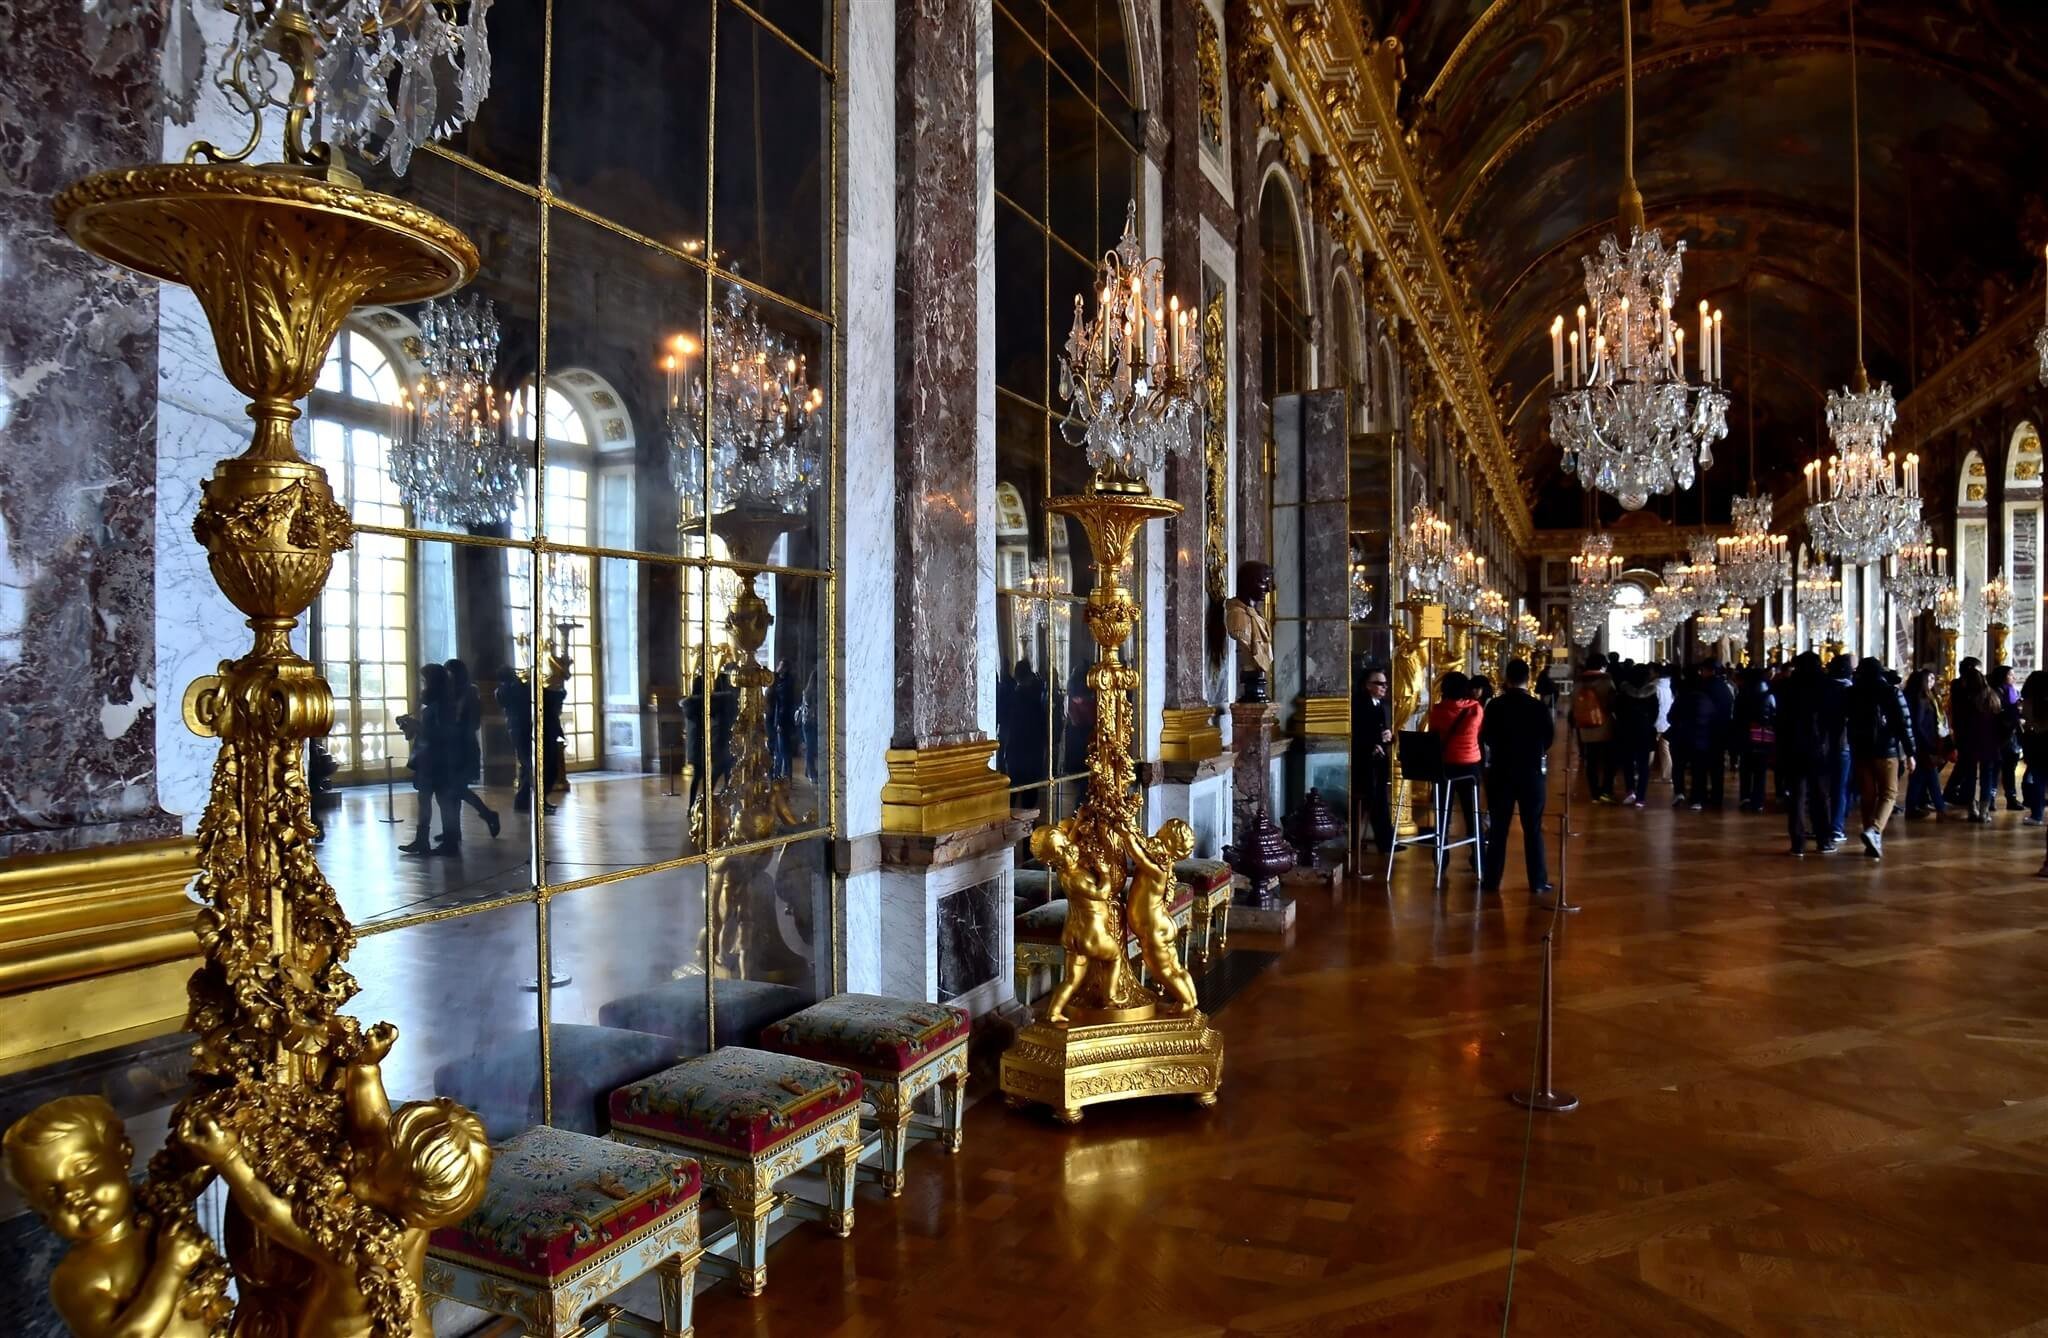 Галереи версаля. Дворец Версаль зеркальная галерея. Версаль Франция зеркальная галерея. Зеркальный зал Версальского дворца. Версальский дворец внутри зеркальная галерея.